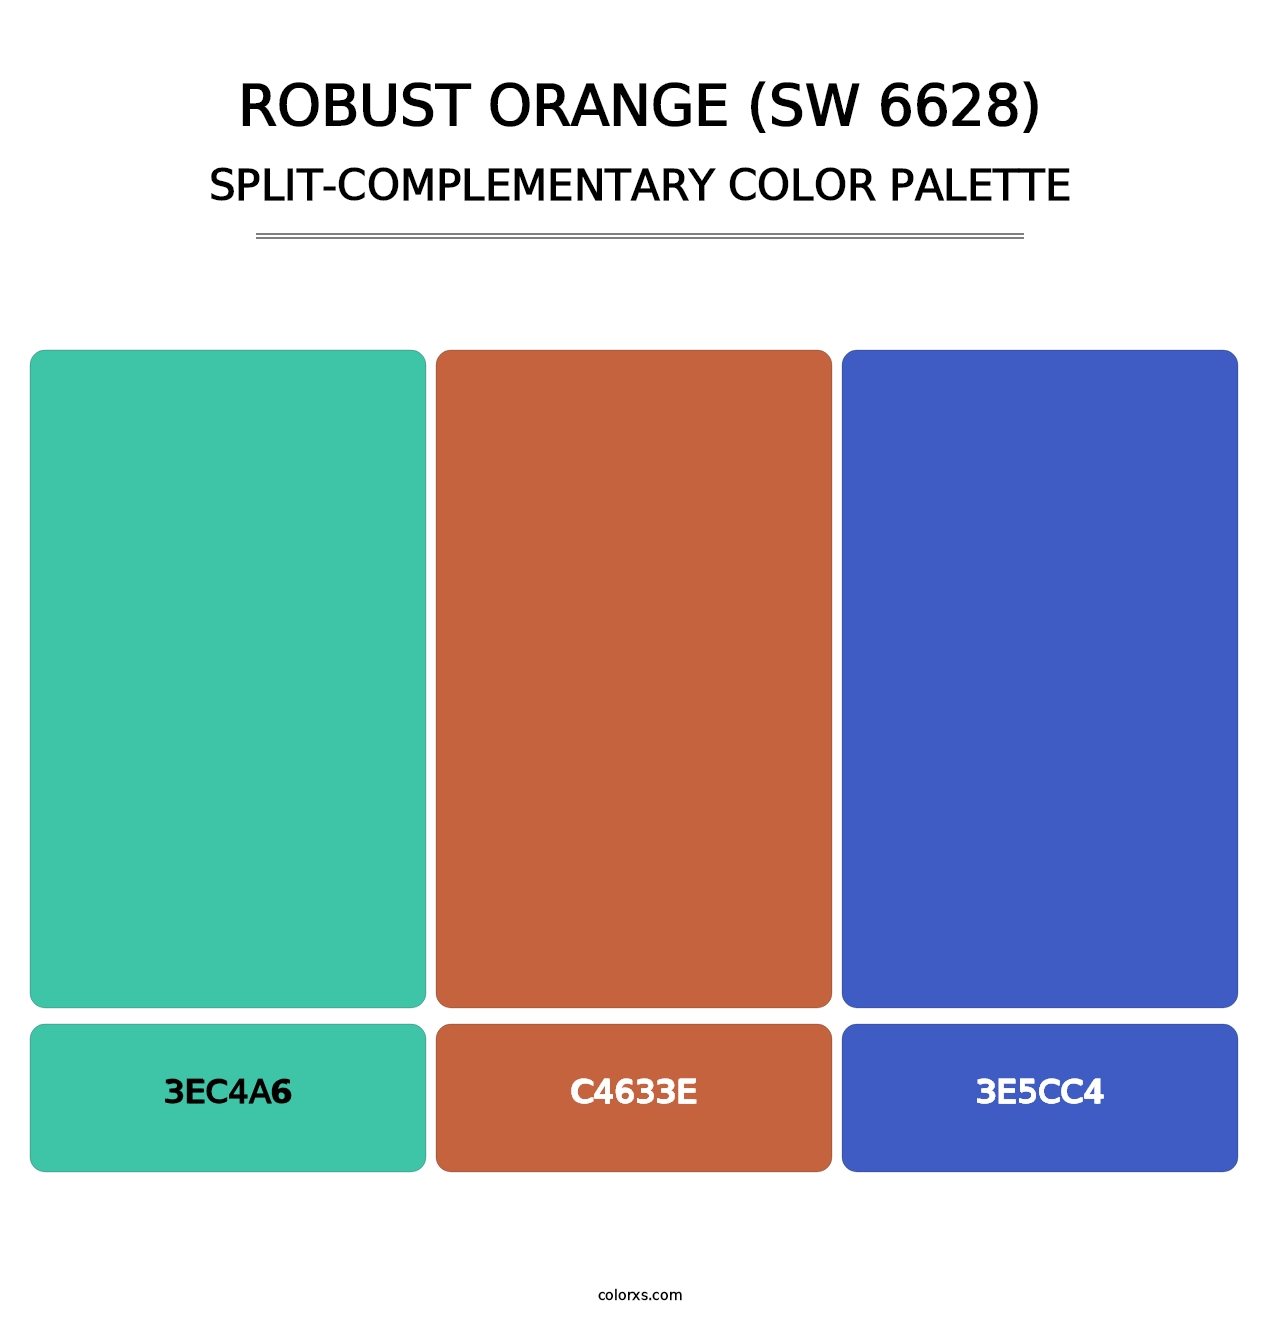 Robust Orange (SW 6628) - Split-Complementary Color Palette